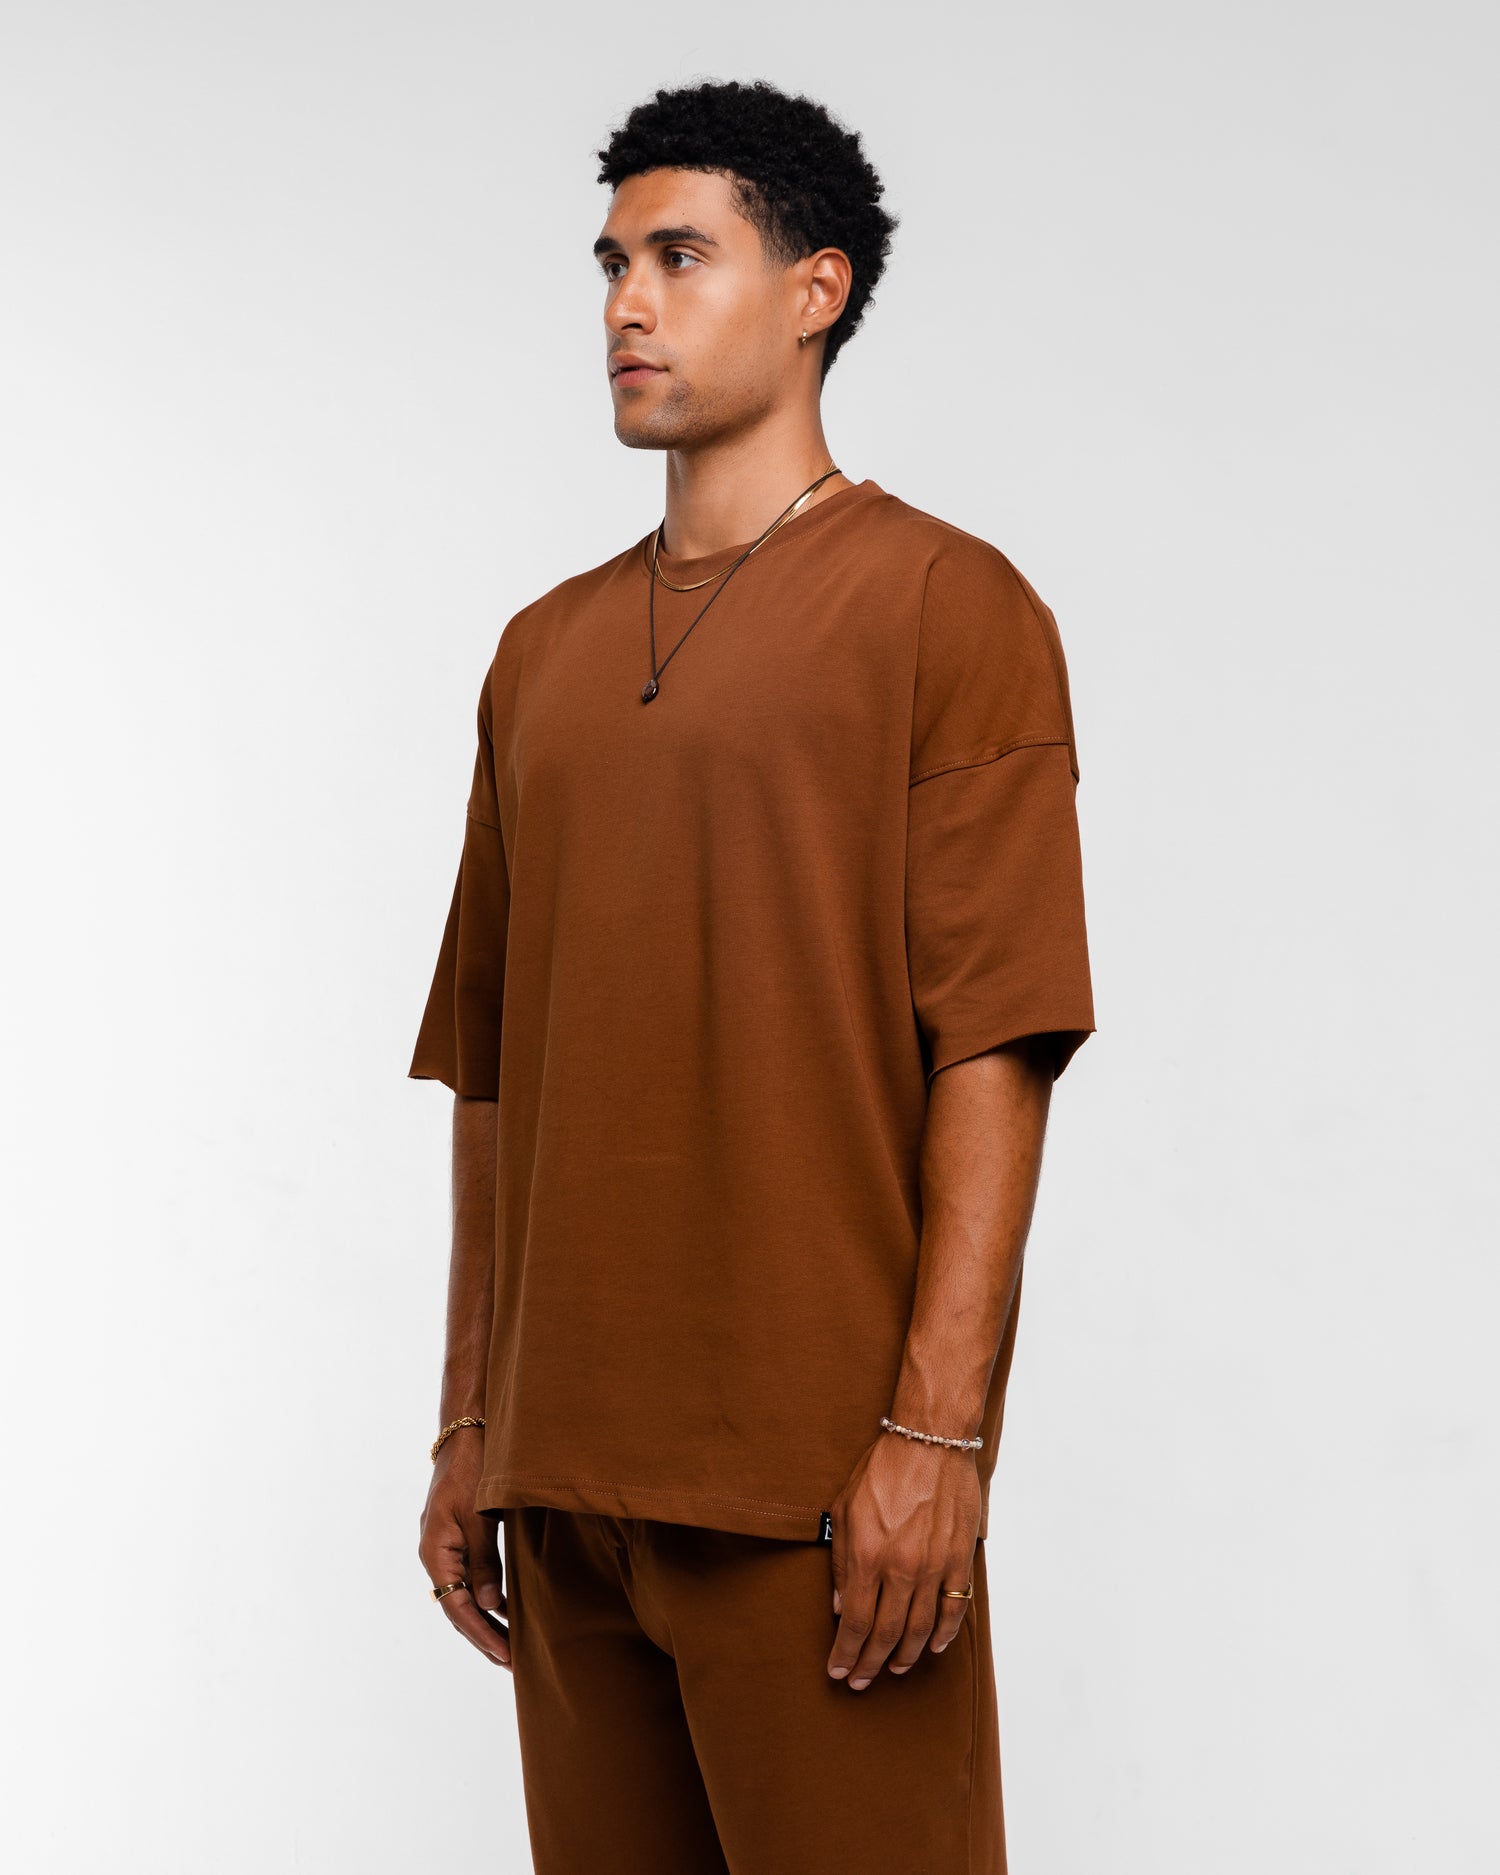 T-shirt&short brown set